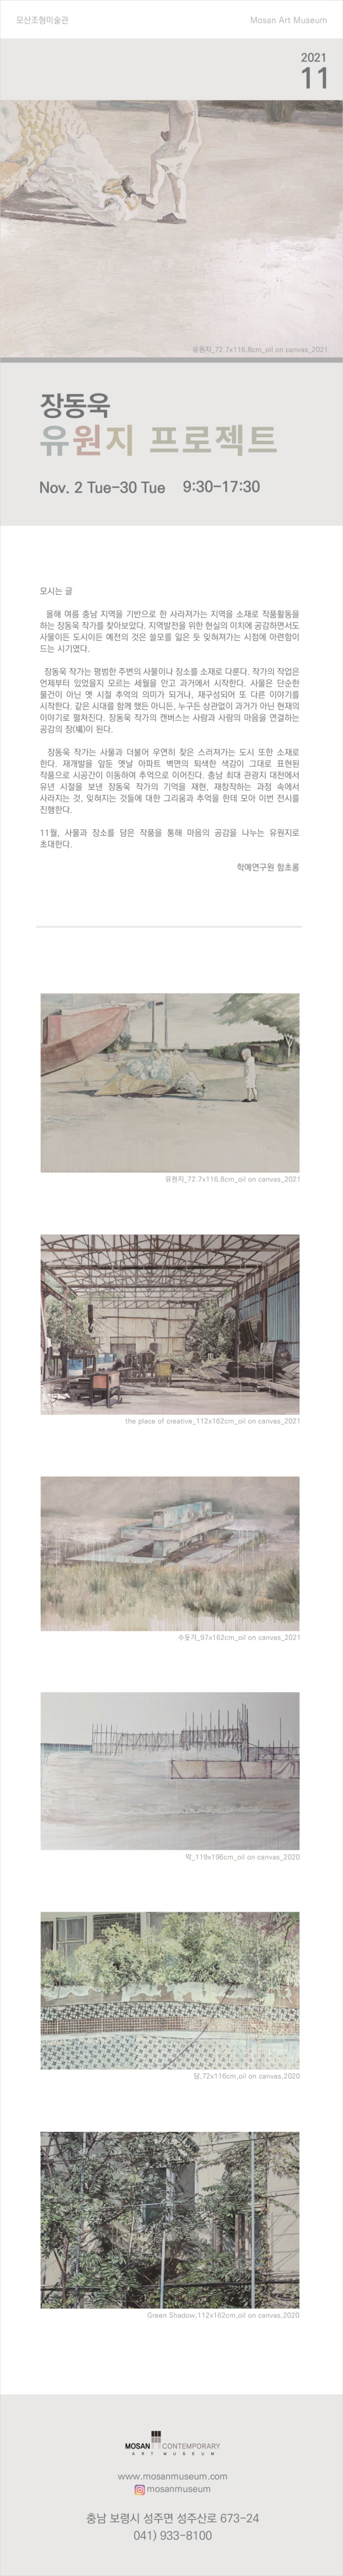 11.2-11.30 장동욱 전시회 "유원지 프로젝트"